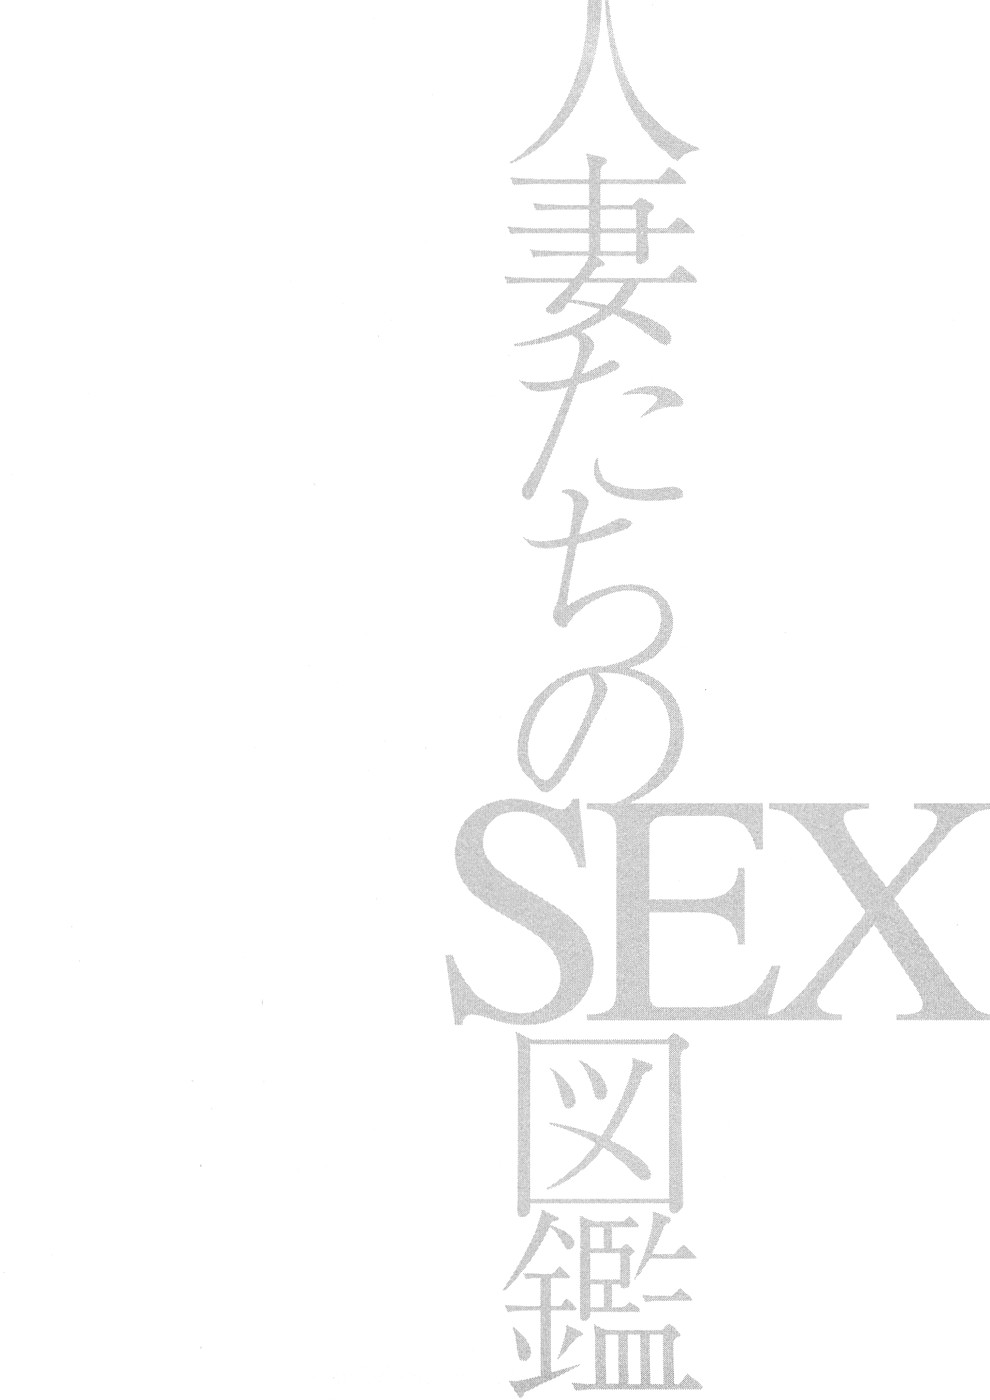 [Hidekazu Tomoda] Guide Book of Married Sex 